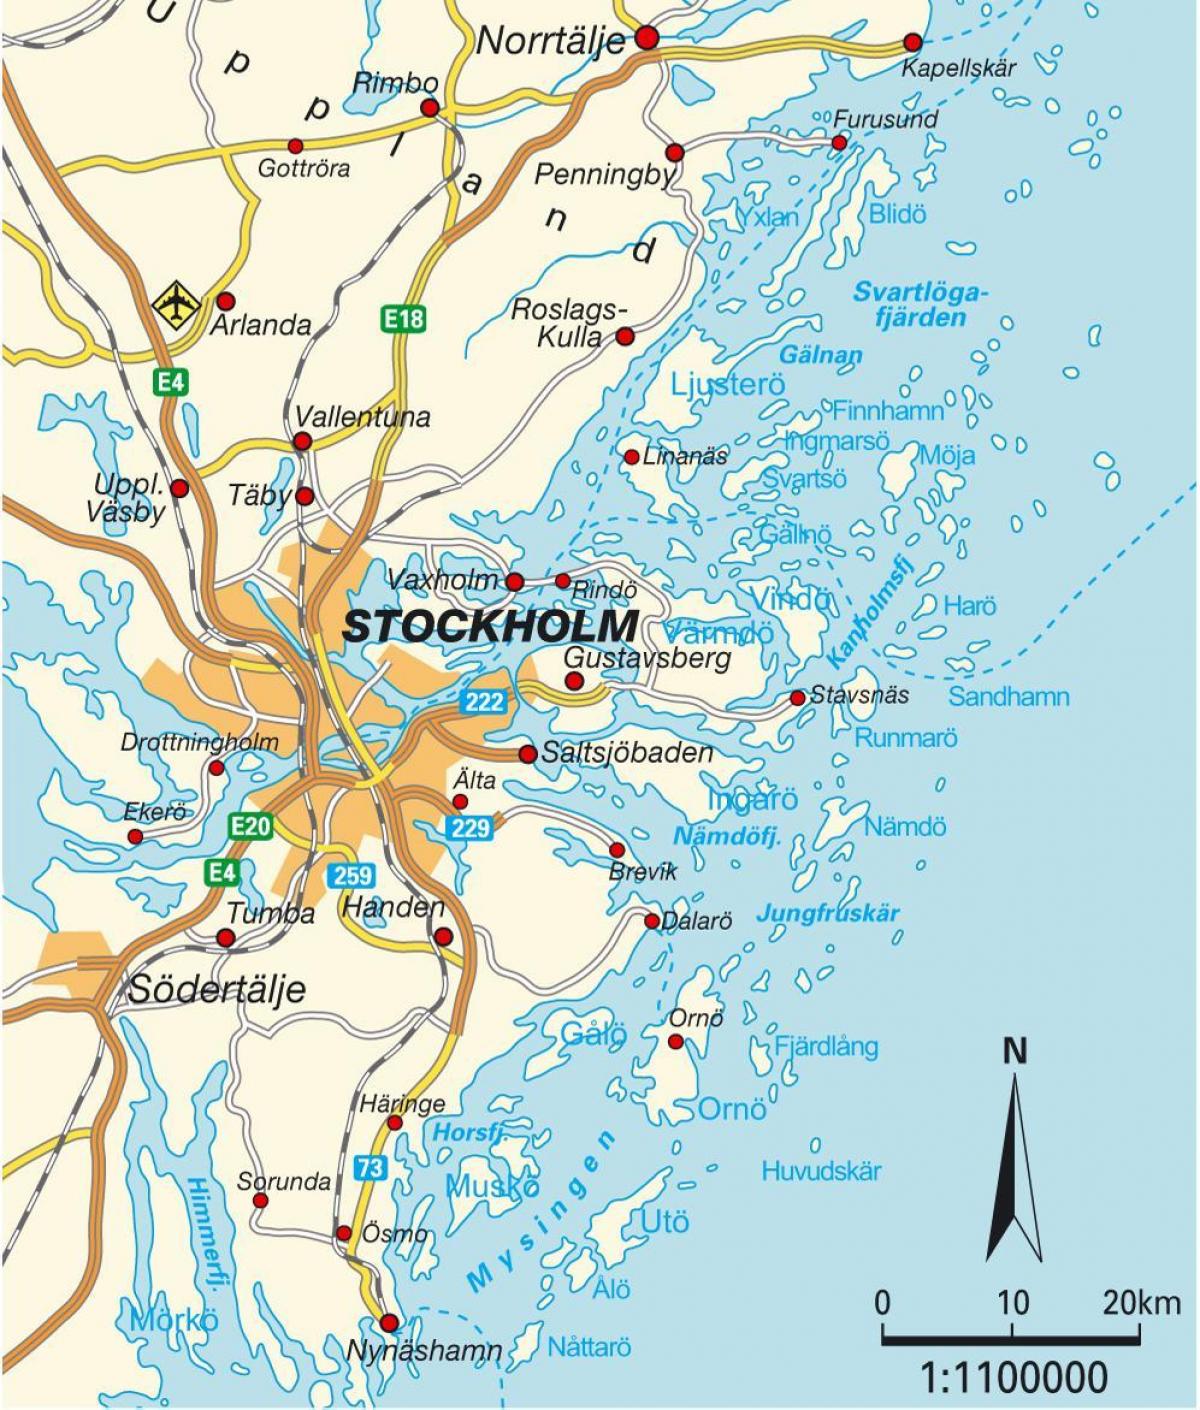 Stockholm, Suedia hiriaren mapa